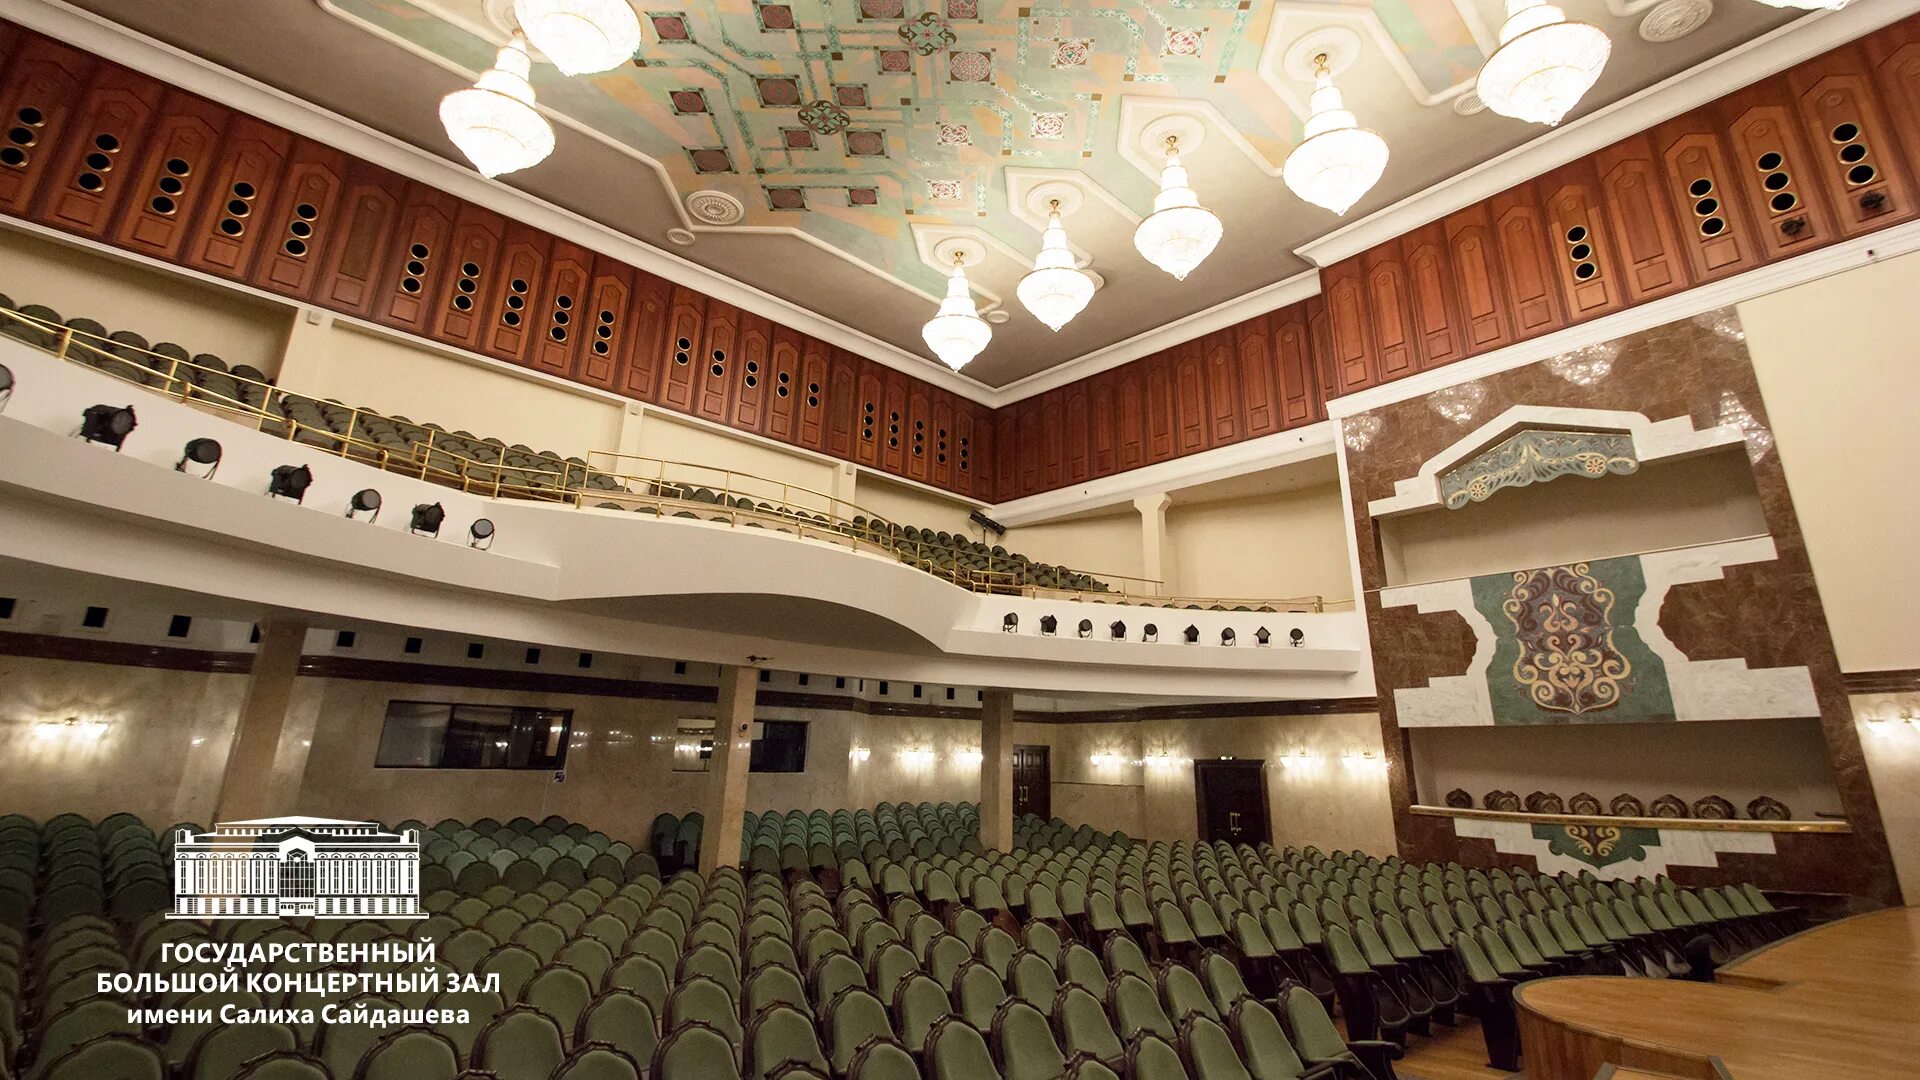 Большой государственный концертный зал. Салиха Сайдашева концертный зал. Театр Казань концертный зал Салиха Сайдашева. Камерный зал ГБКЗ Сайдашева. Госуда́рственный большо́й конце́ртный зал и́мени Сали́ха Сайда́шева.